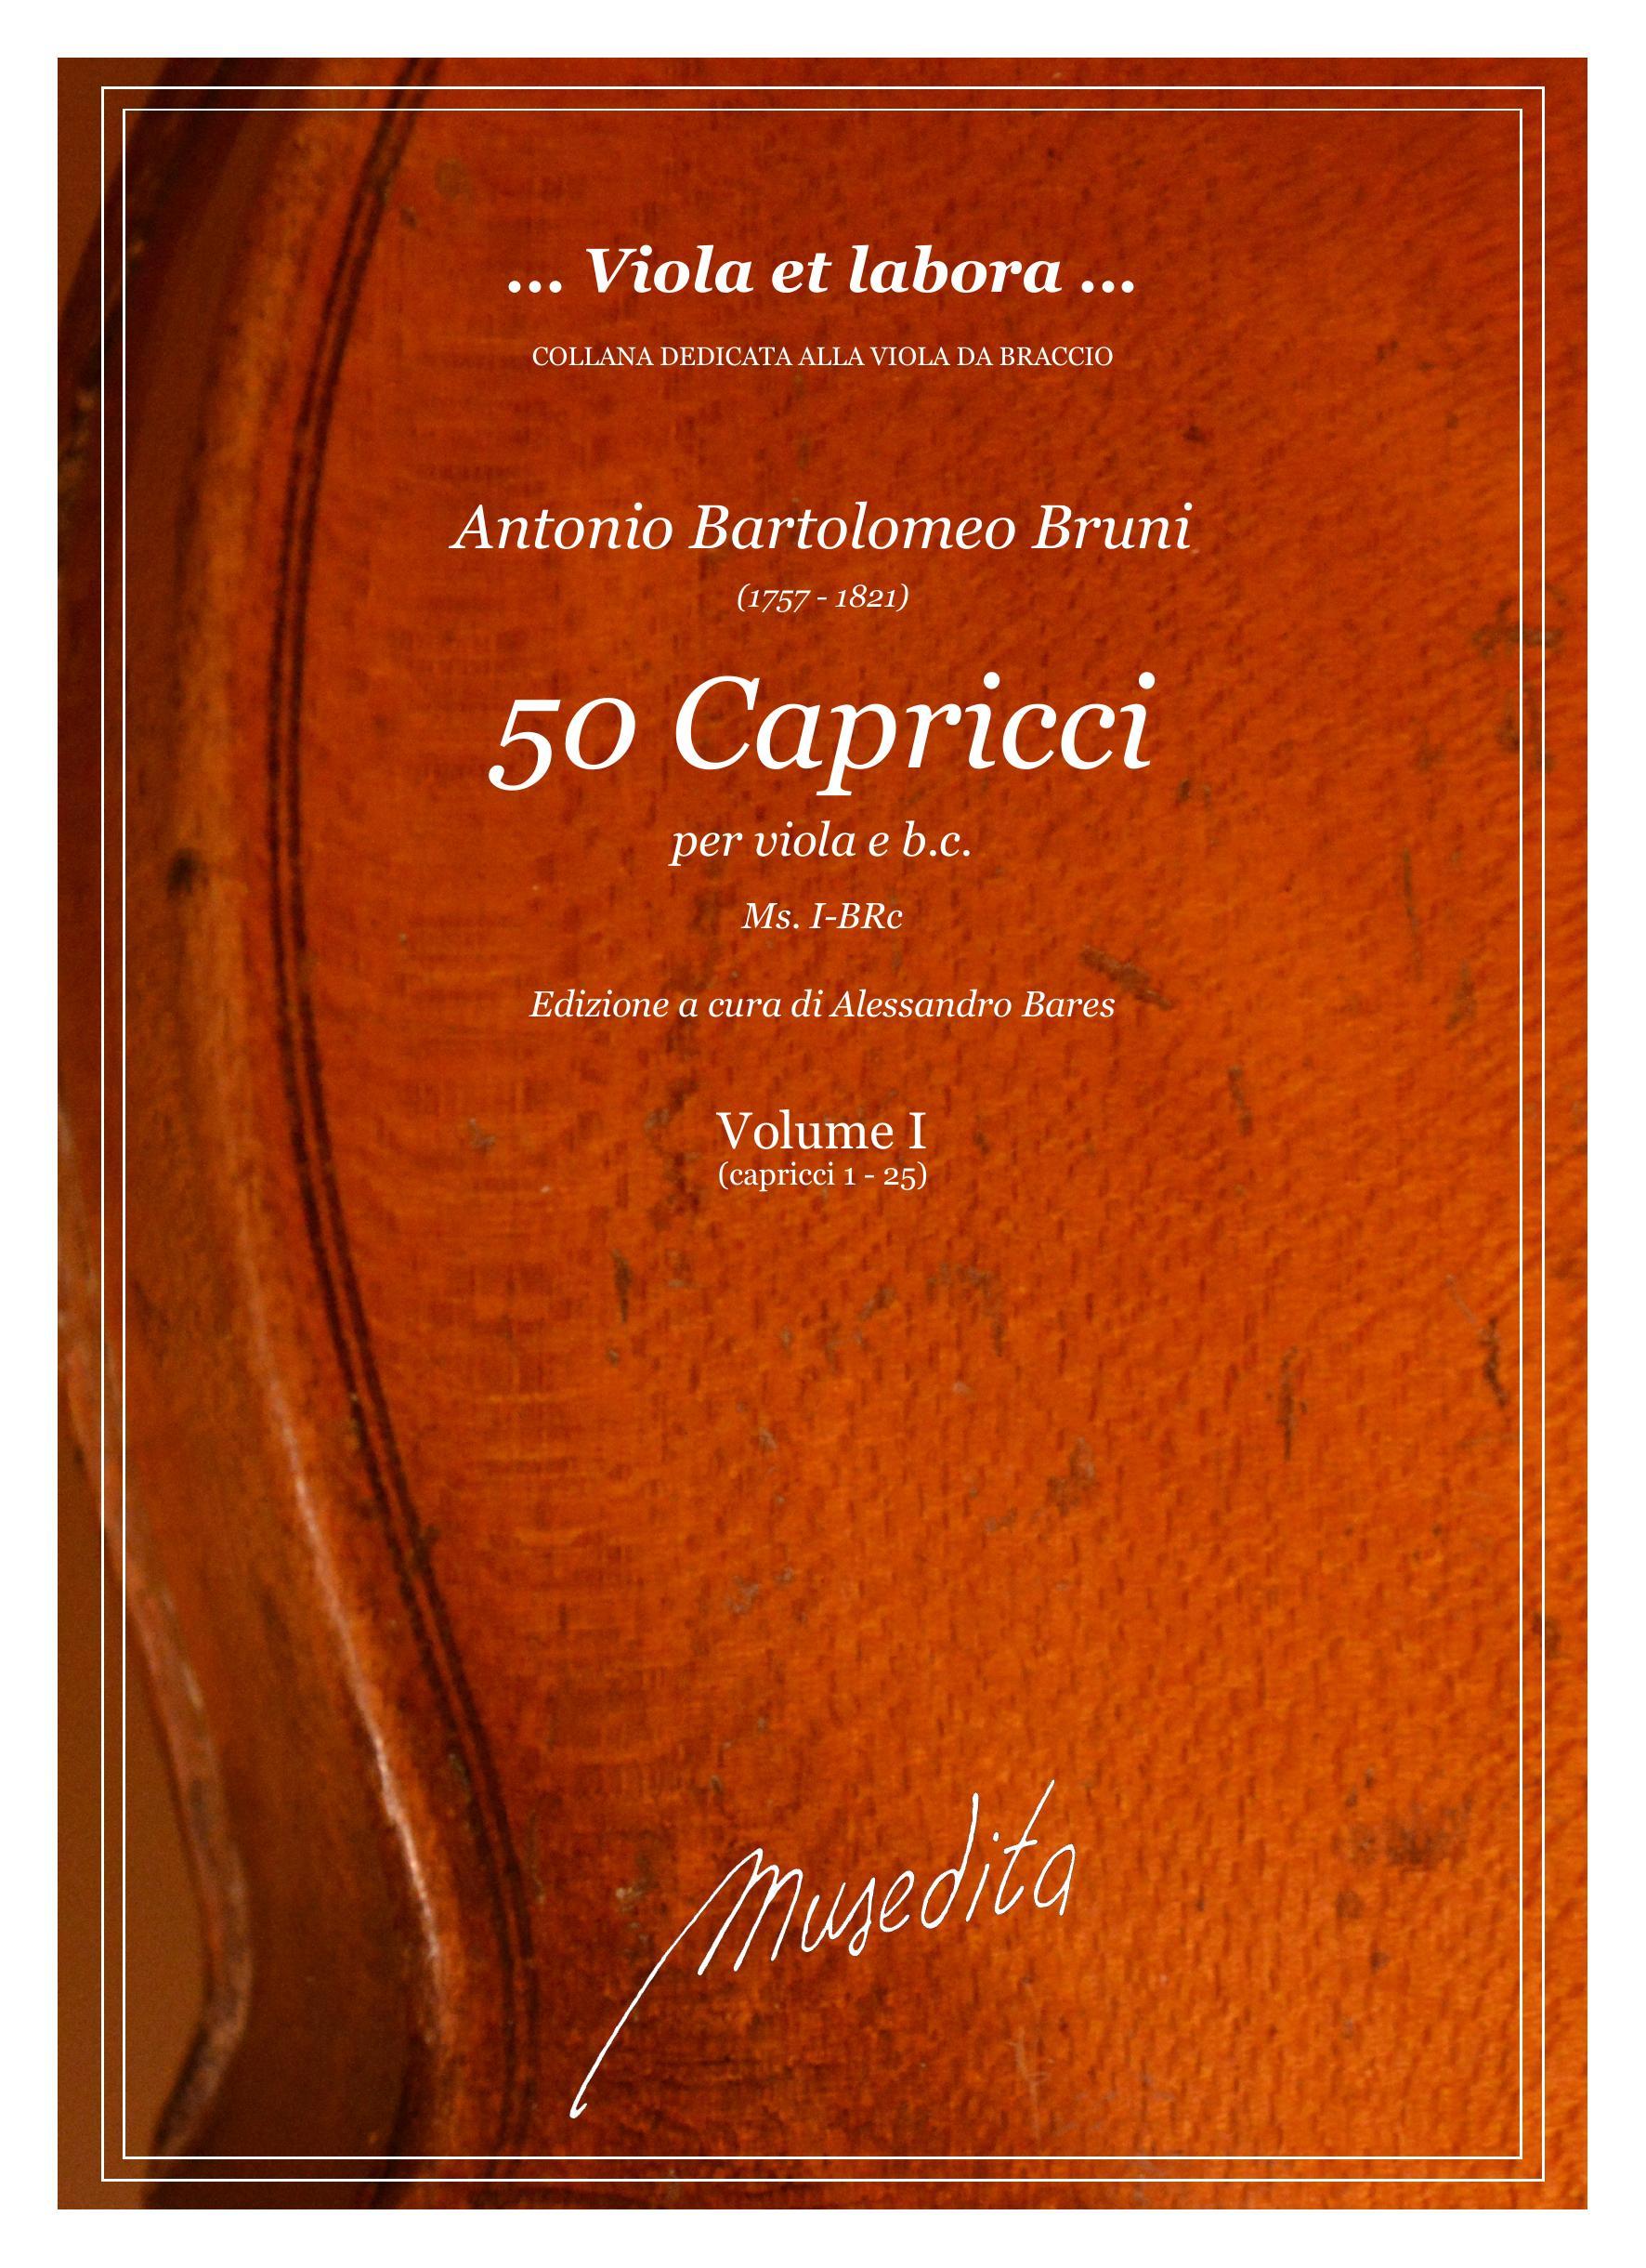 A.B.Bruni: 50 Capricci (Ms, I-BRc)